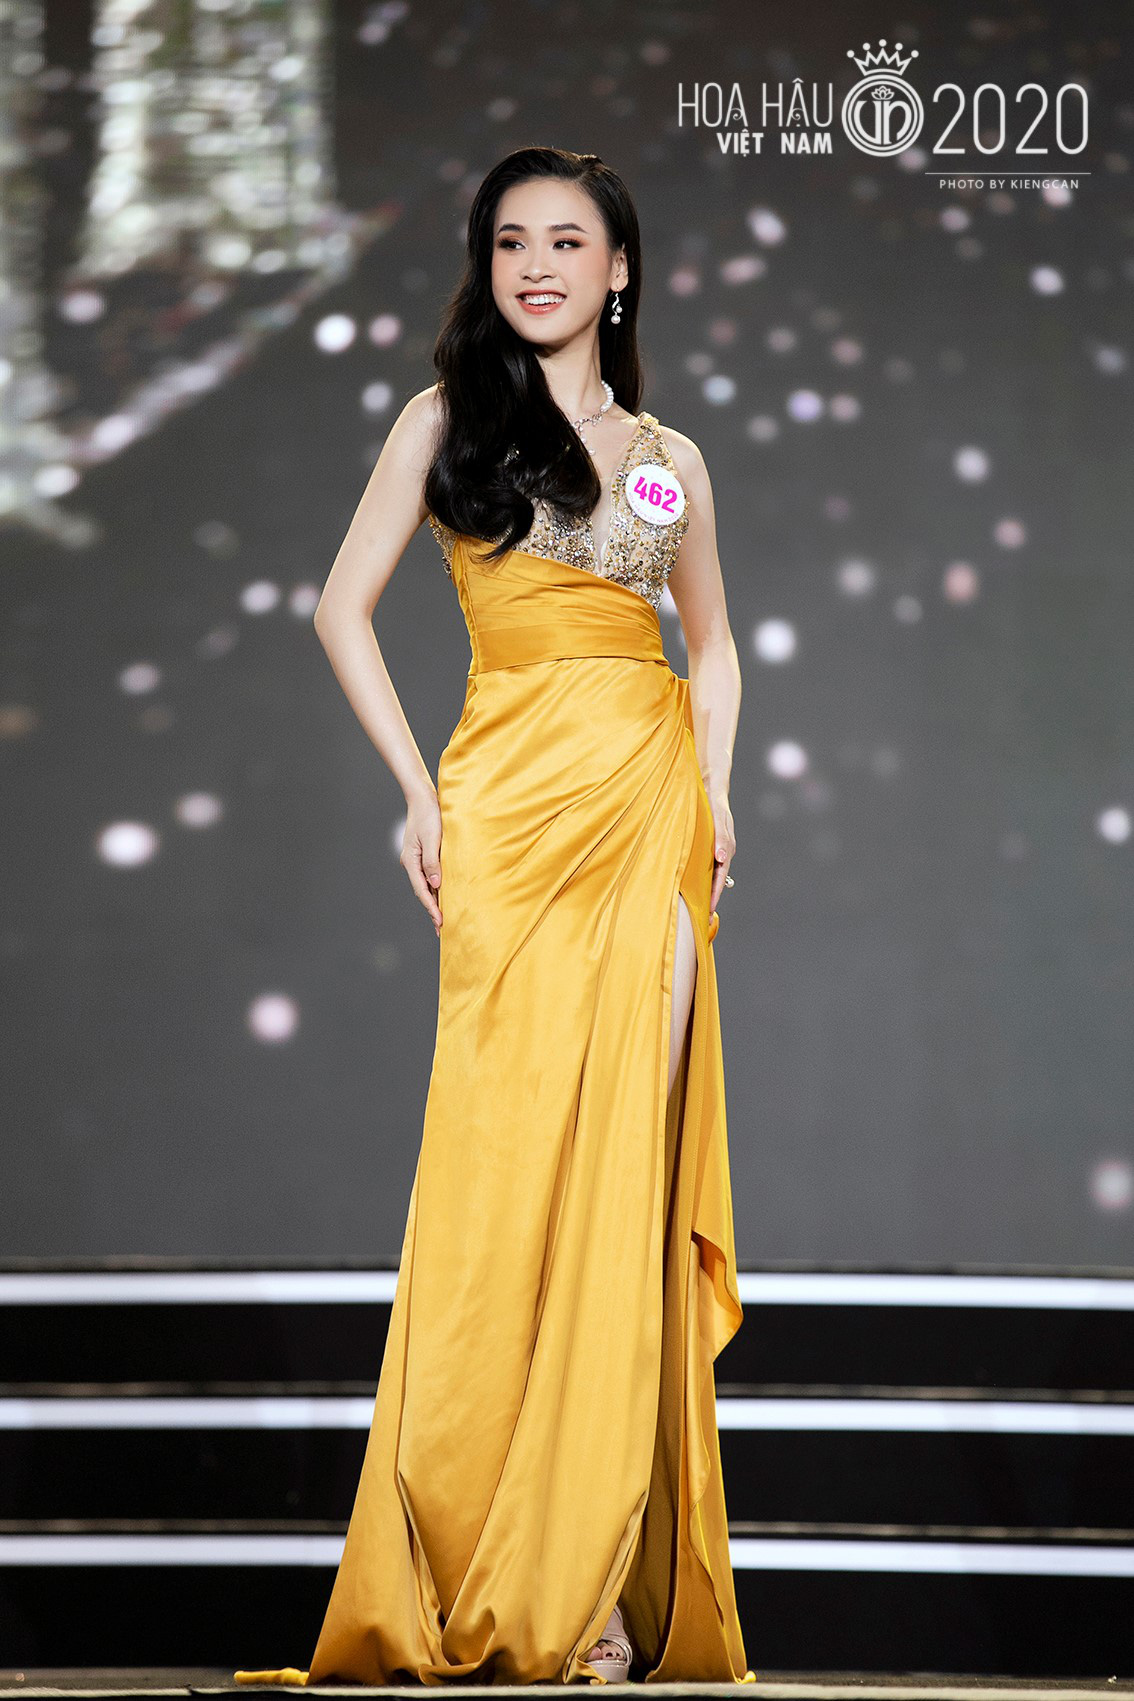 Chung kết Hoa hậu Việt Nam 2020 đã tìm ra được 35 ứng cử viên sáng giá - Ảnh 6.